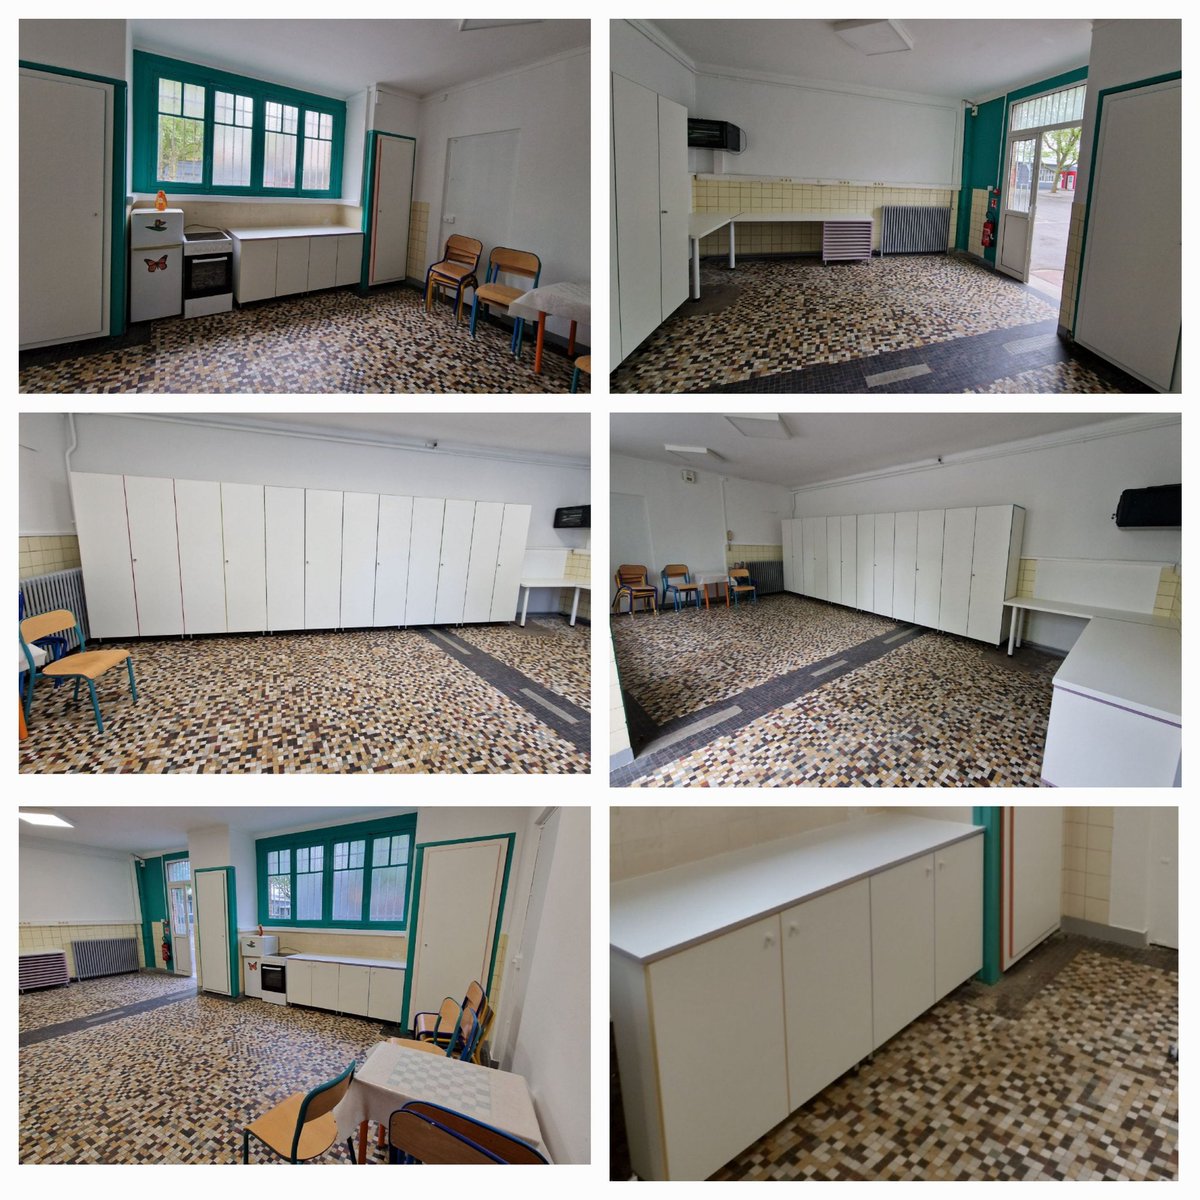 Rénovation salle ALSH Jaurès élémentaire @montreuil @Atelier93100 #servicepublic